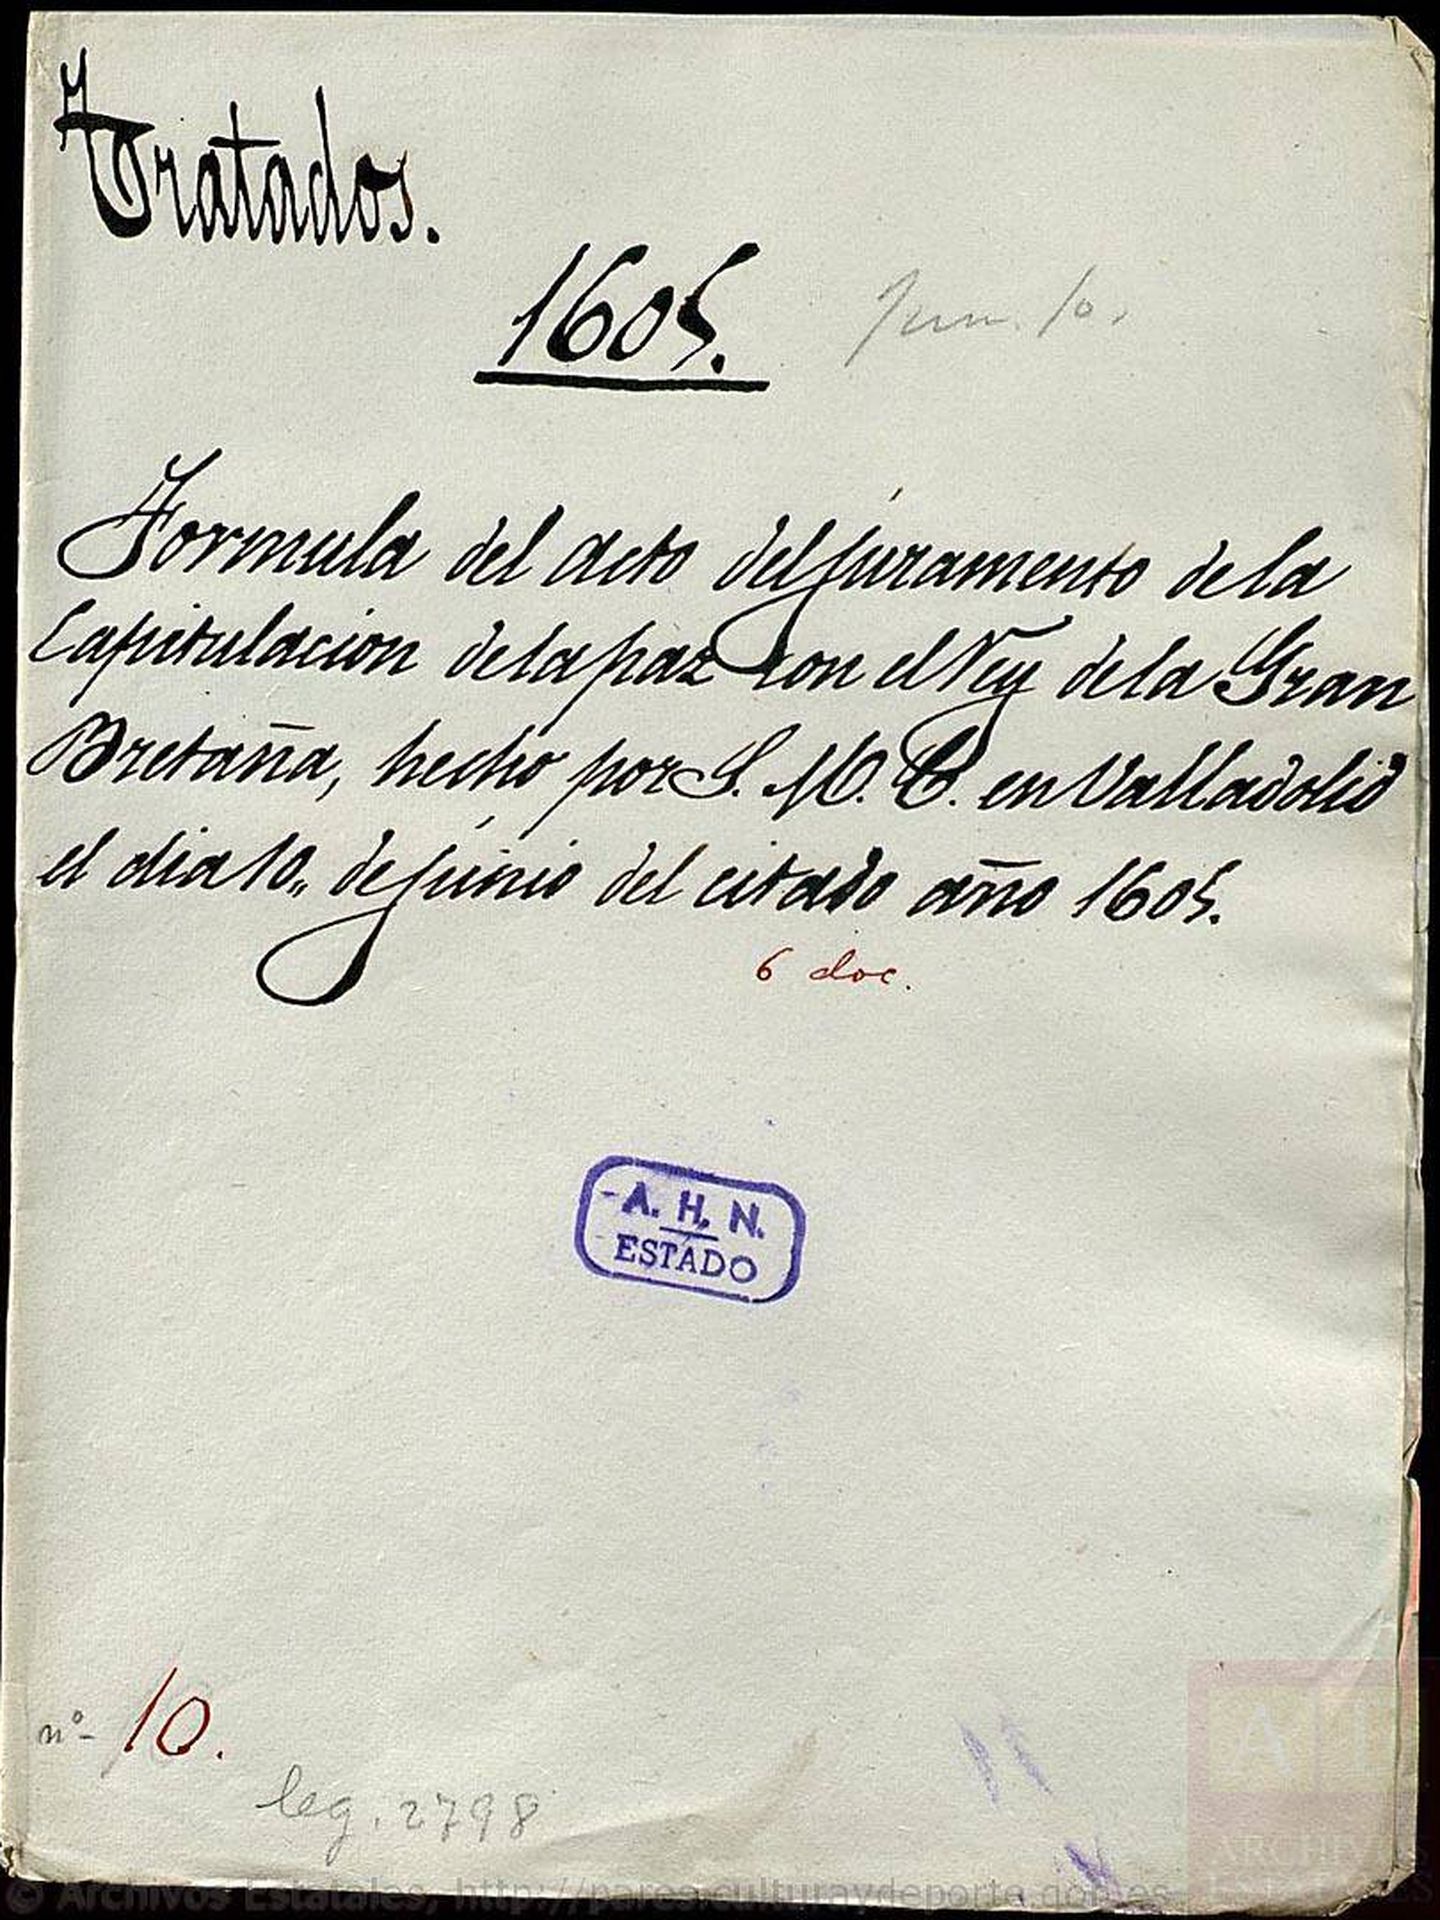 Tratado de Londres, 1605. Copia española. (Archivo Histórico Nacional) 